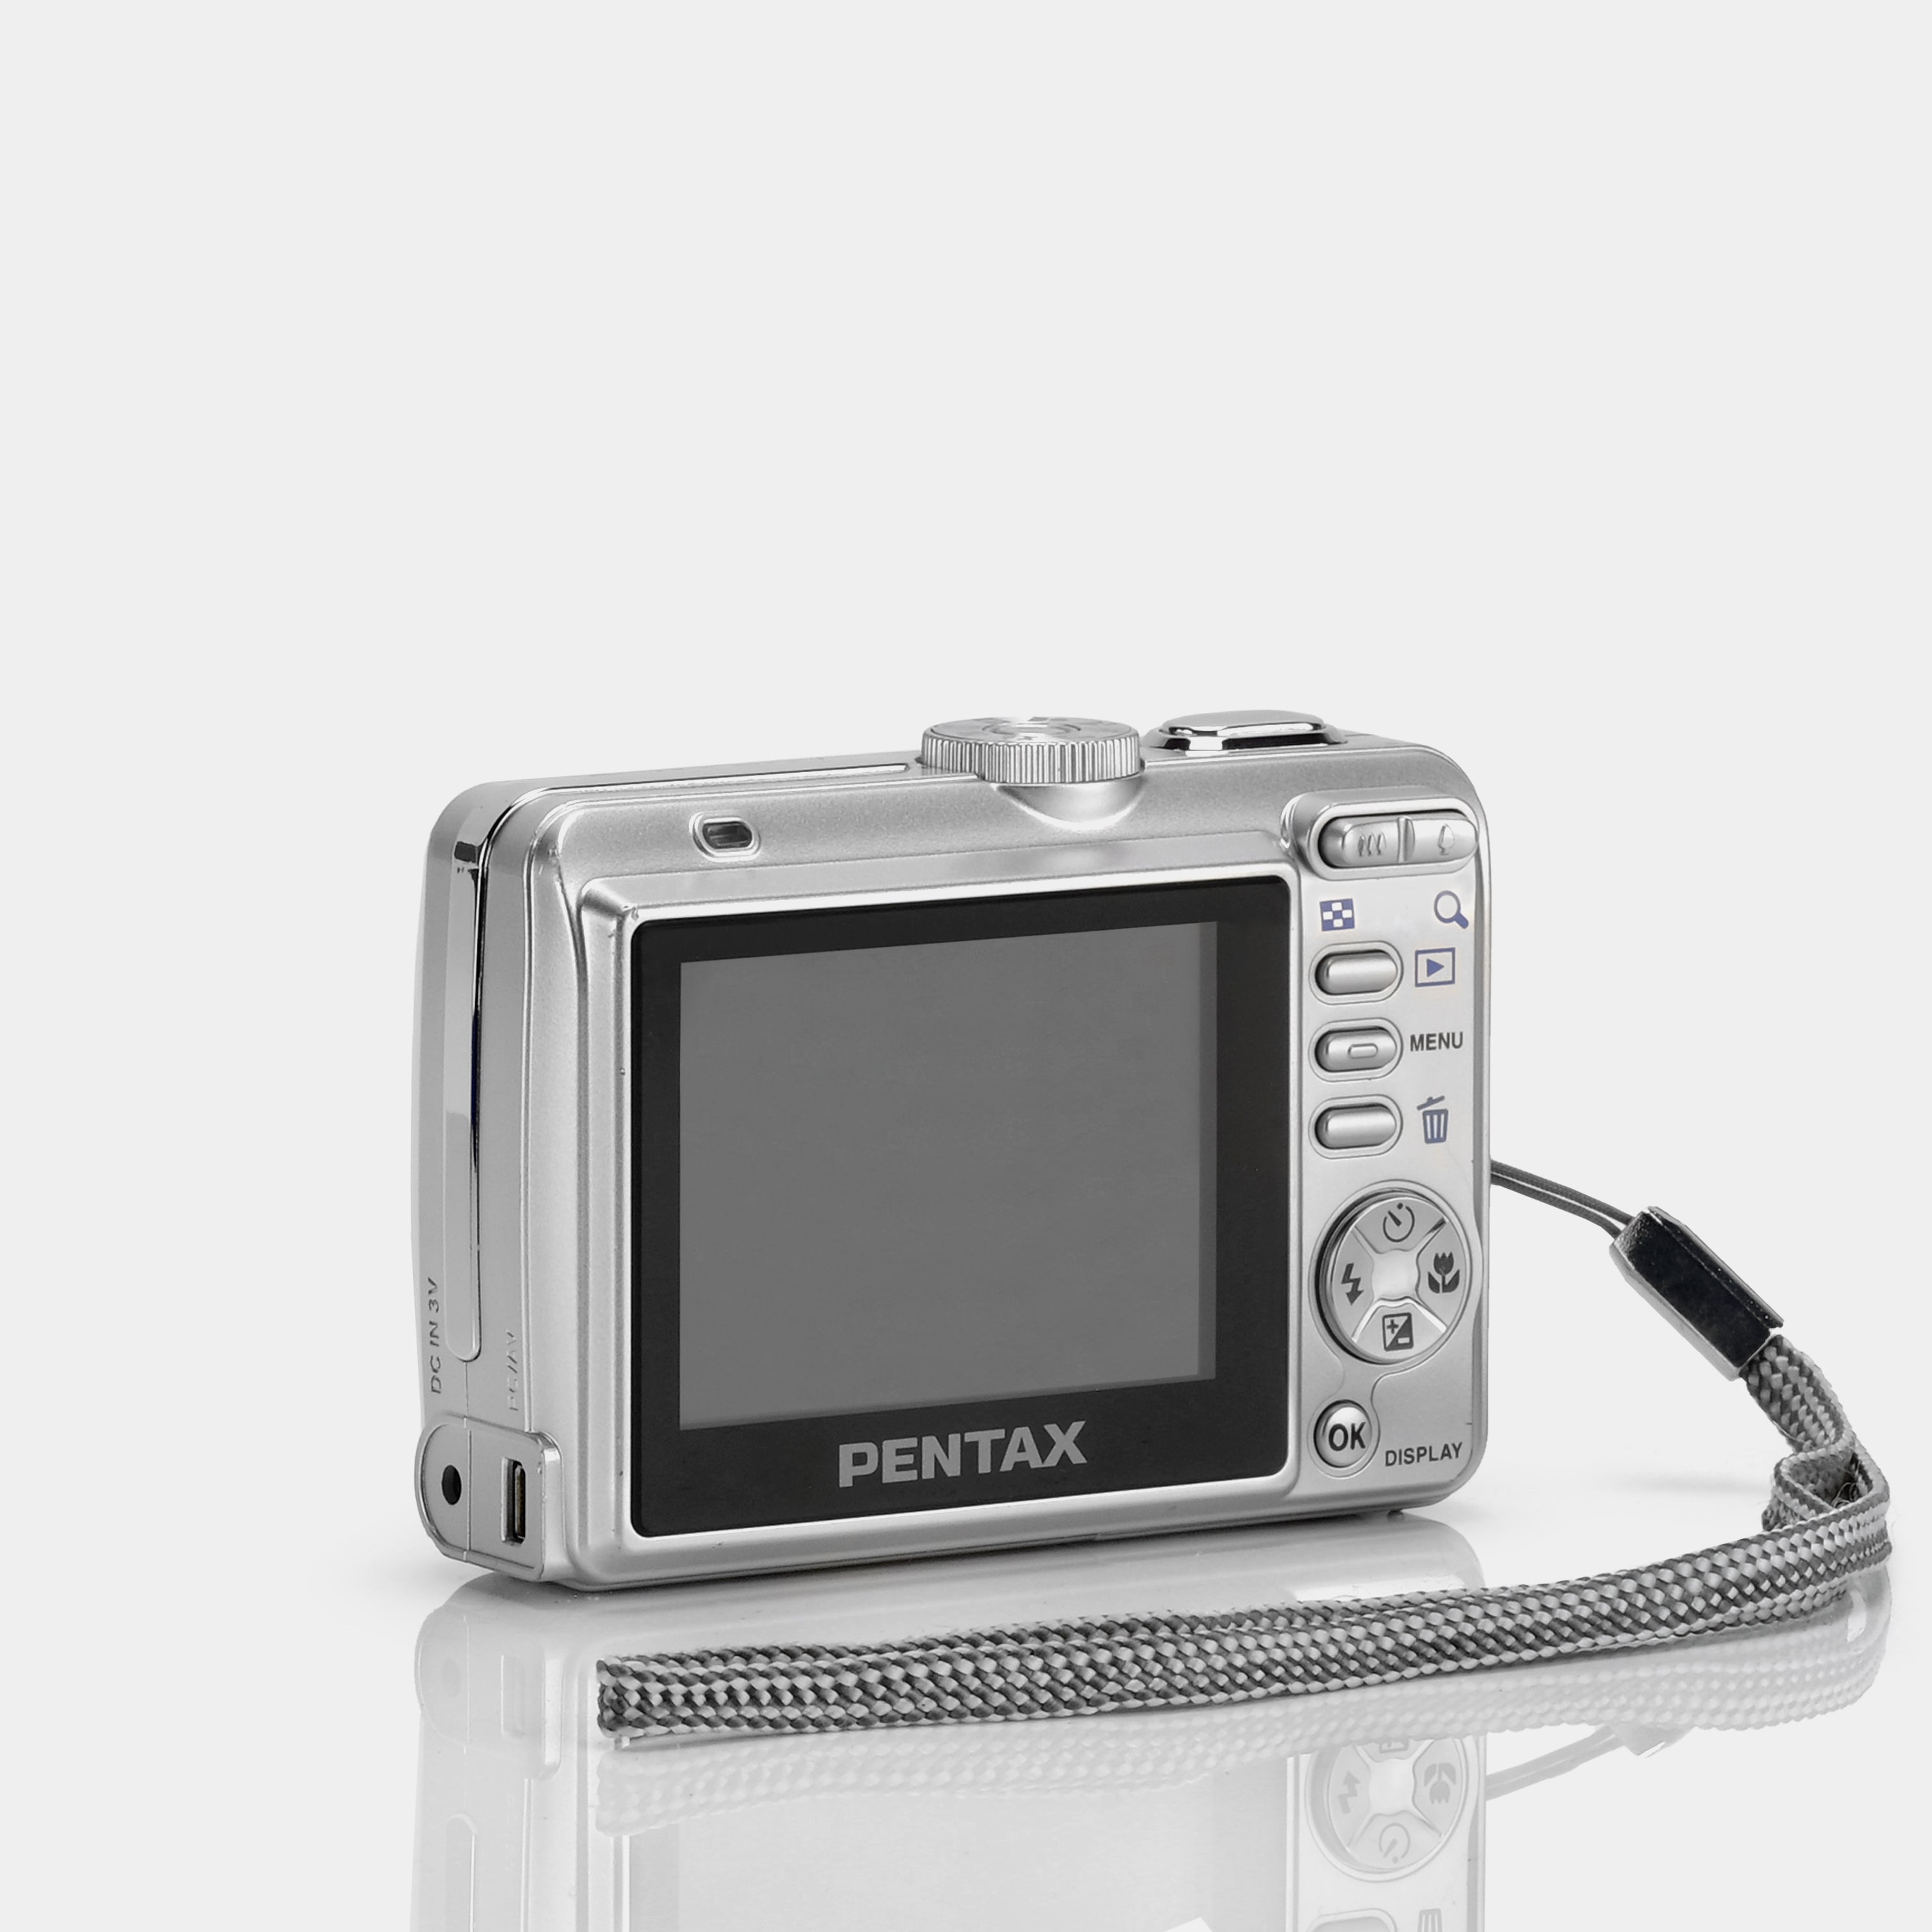 Pentax Optio E10 Point and Shoot Digital Camera